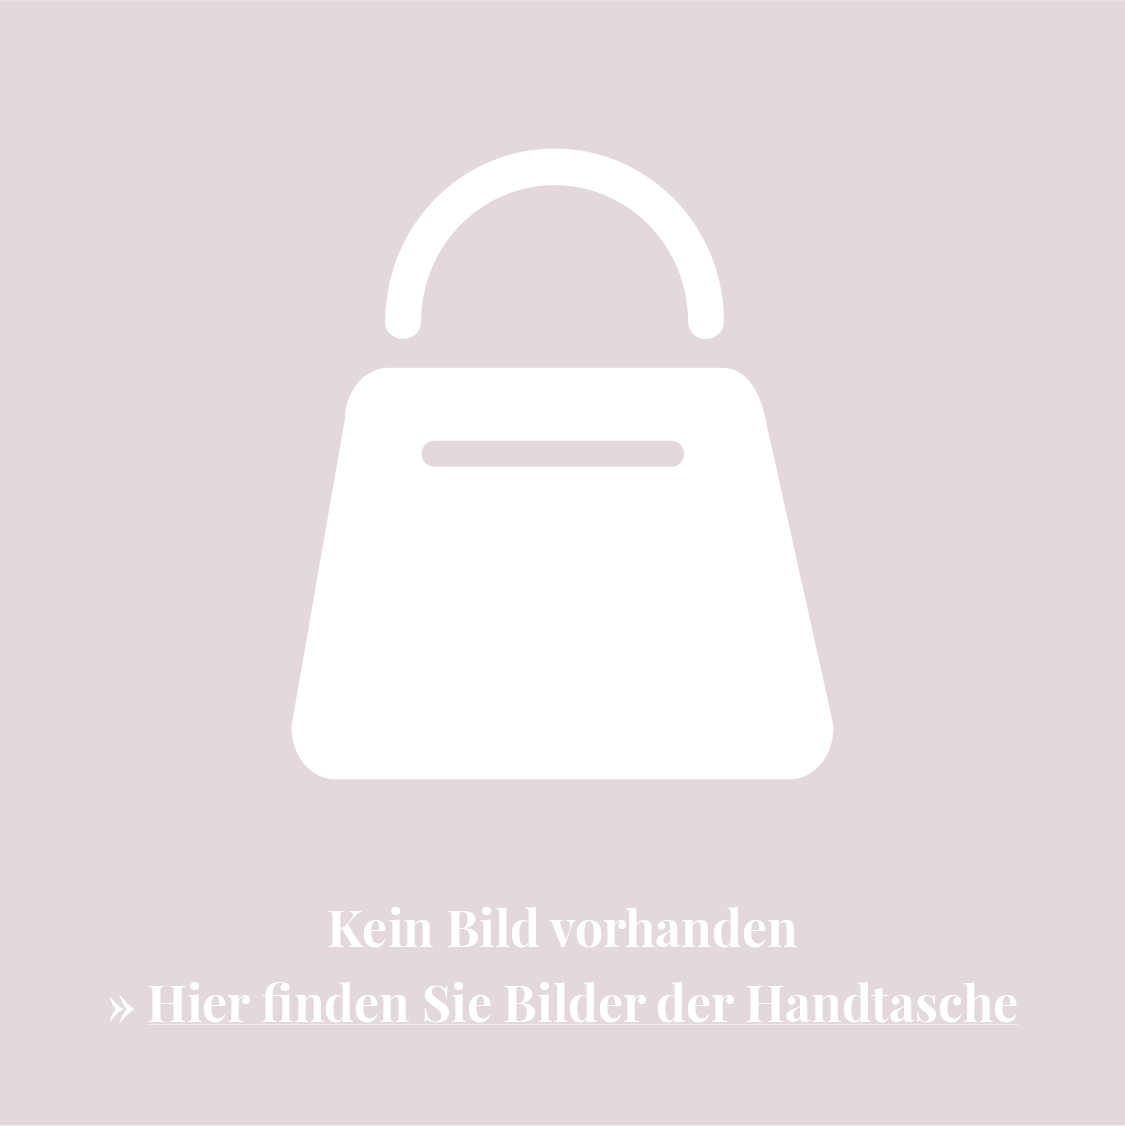 KHAITE Mini The Leather Handtasche - Grün von KHAITE